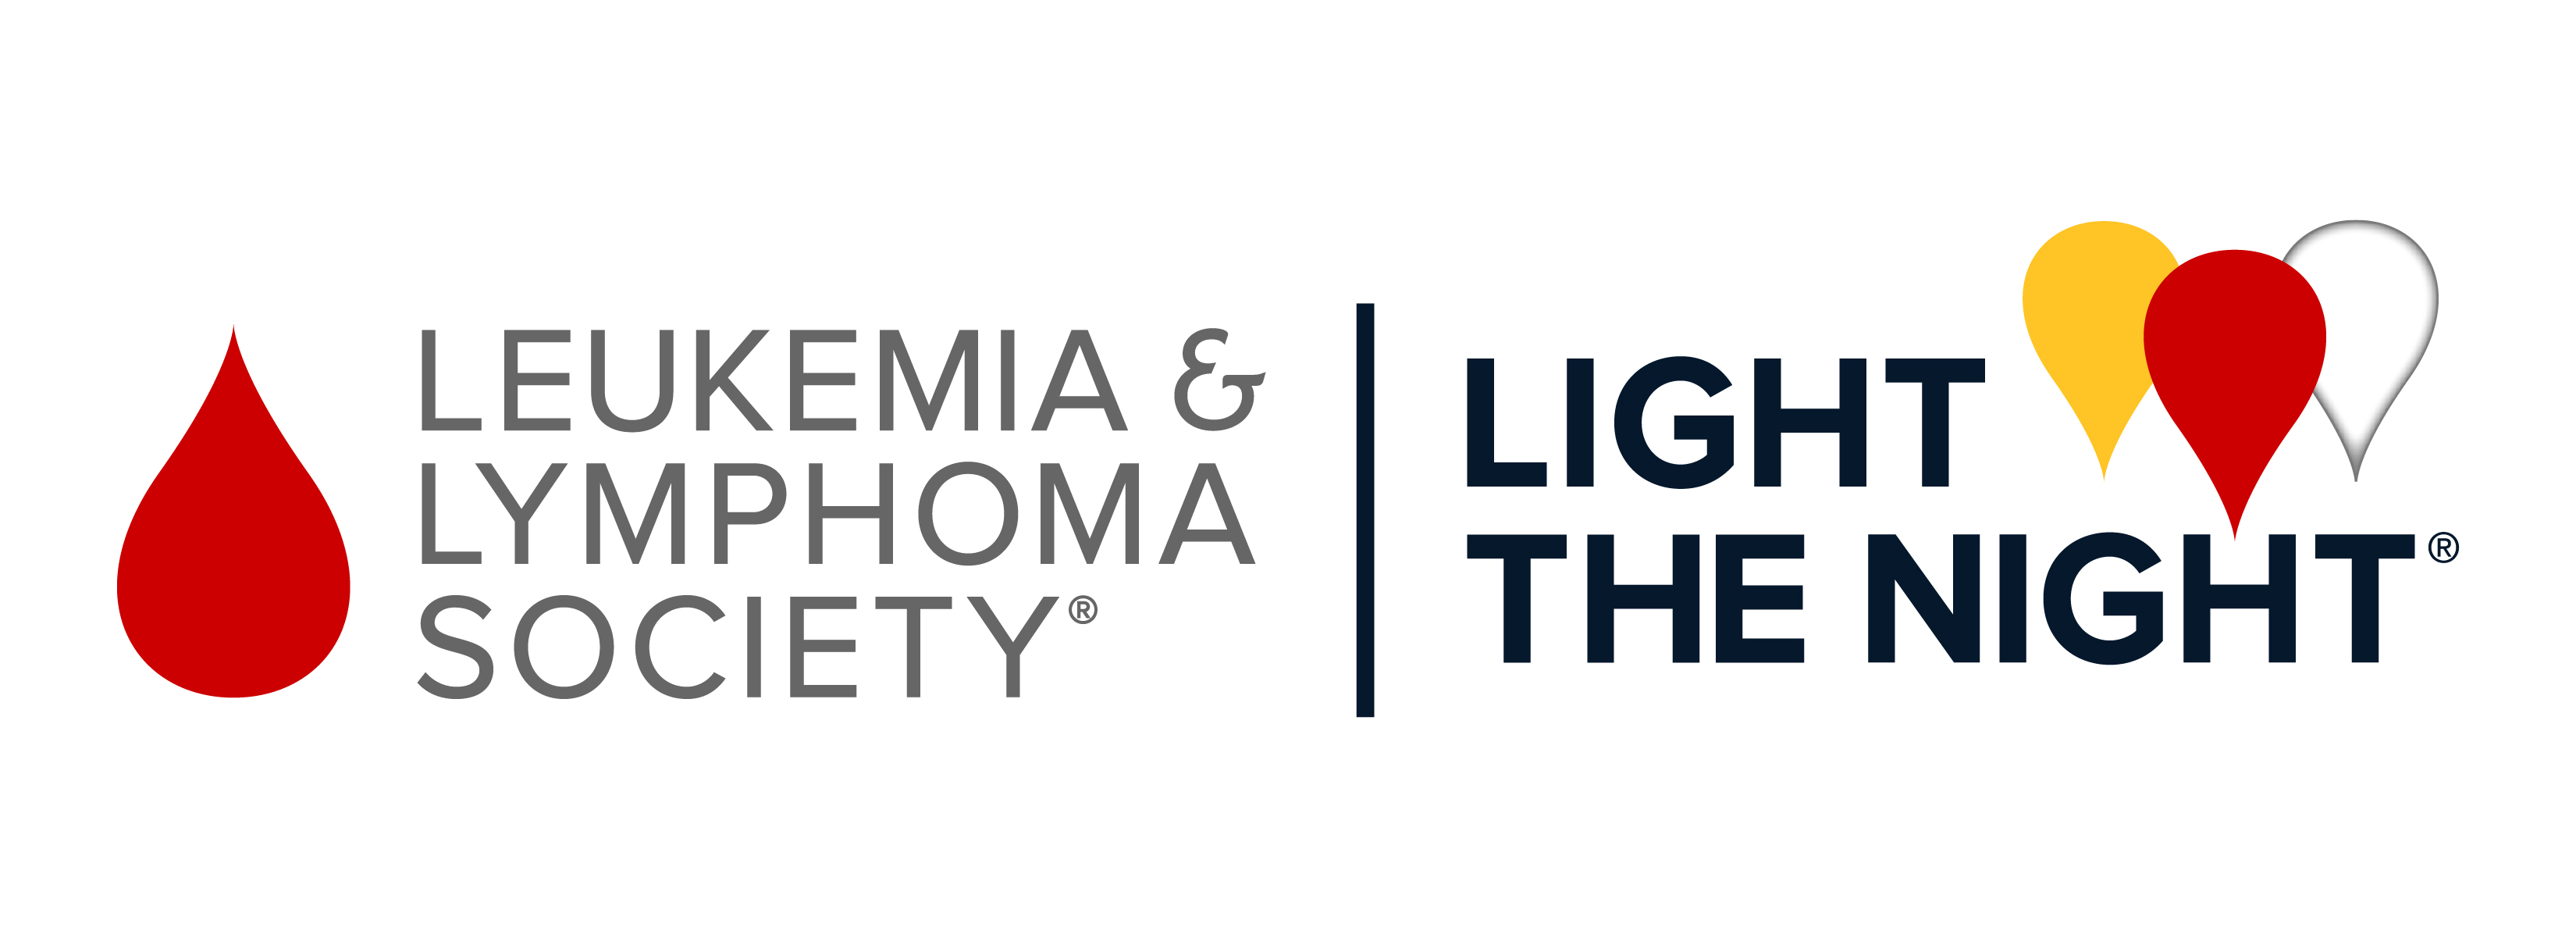 Leukemia and Lymphoma Society - Light The Night